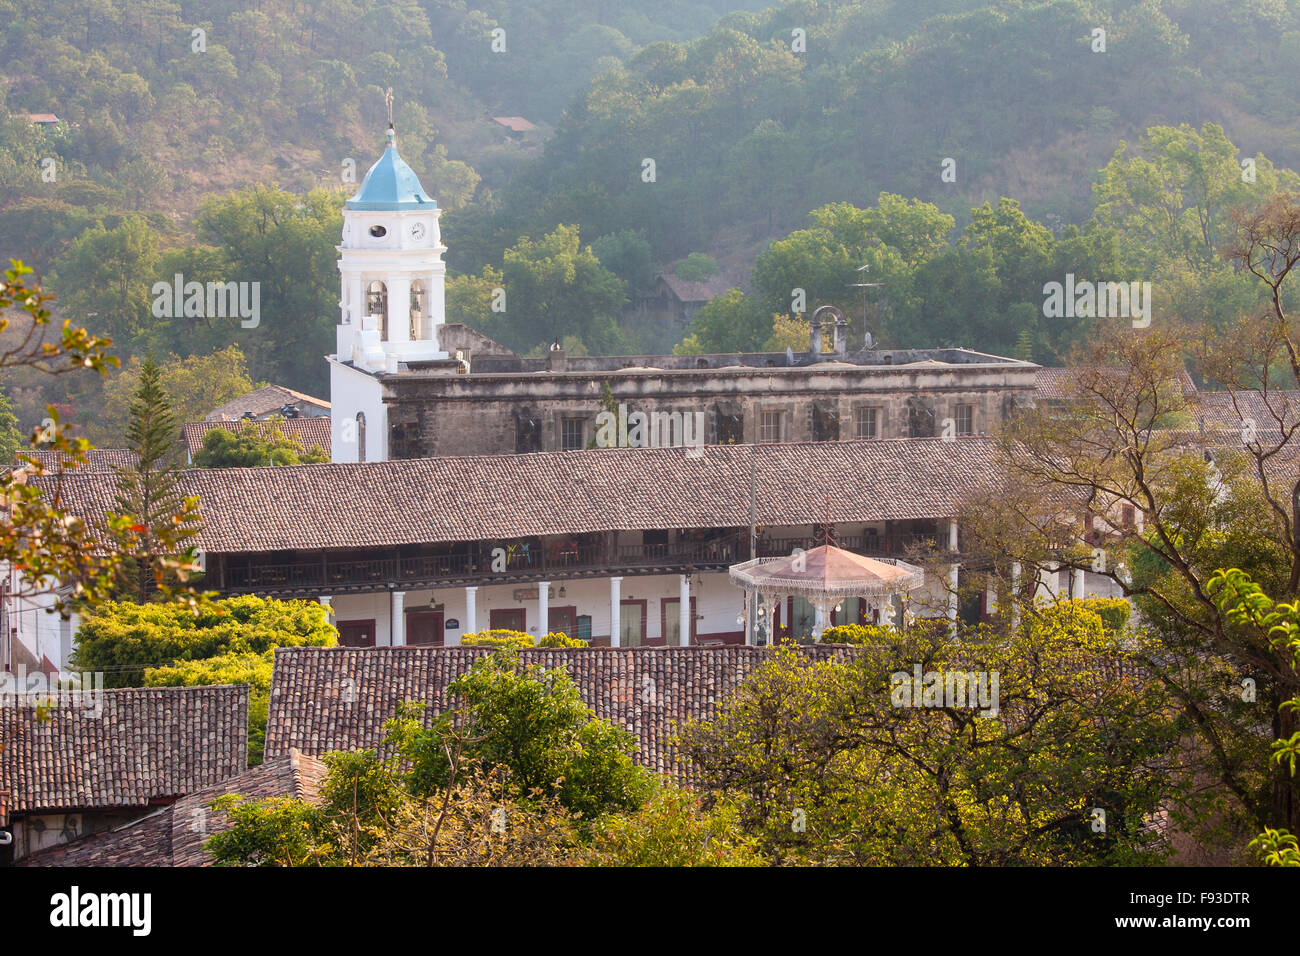 El blanco campanario de la iglesia, saluda a la luz de la mañana en San Sebastián del Oeste, Jalisco, México. Foto de stock